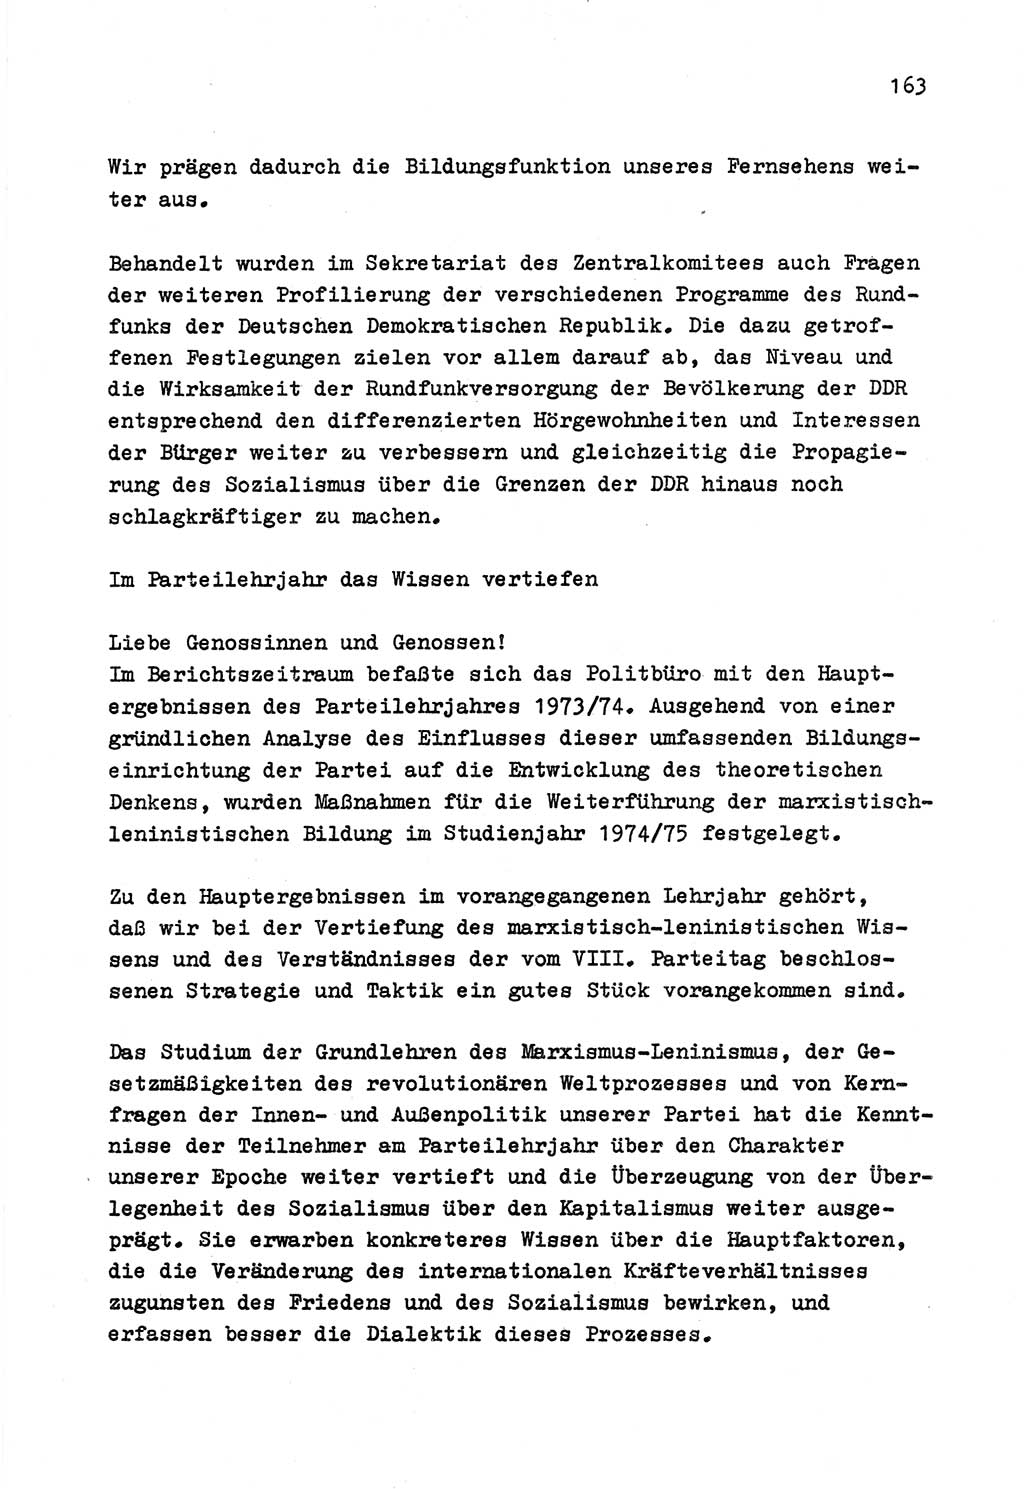 Zu Fragen der Parteiarbeit [Sozialistische Einheitspartei Deutschlands (SED) Deutsche Demokratische Republik (DDR)] 1979, Seite 163 (Fr. PA SED DDR 1979, S. 163)